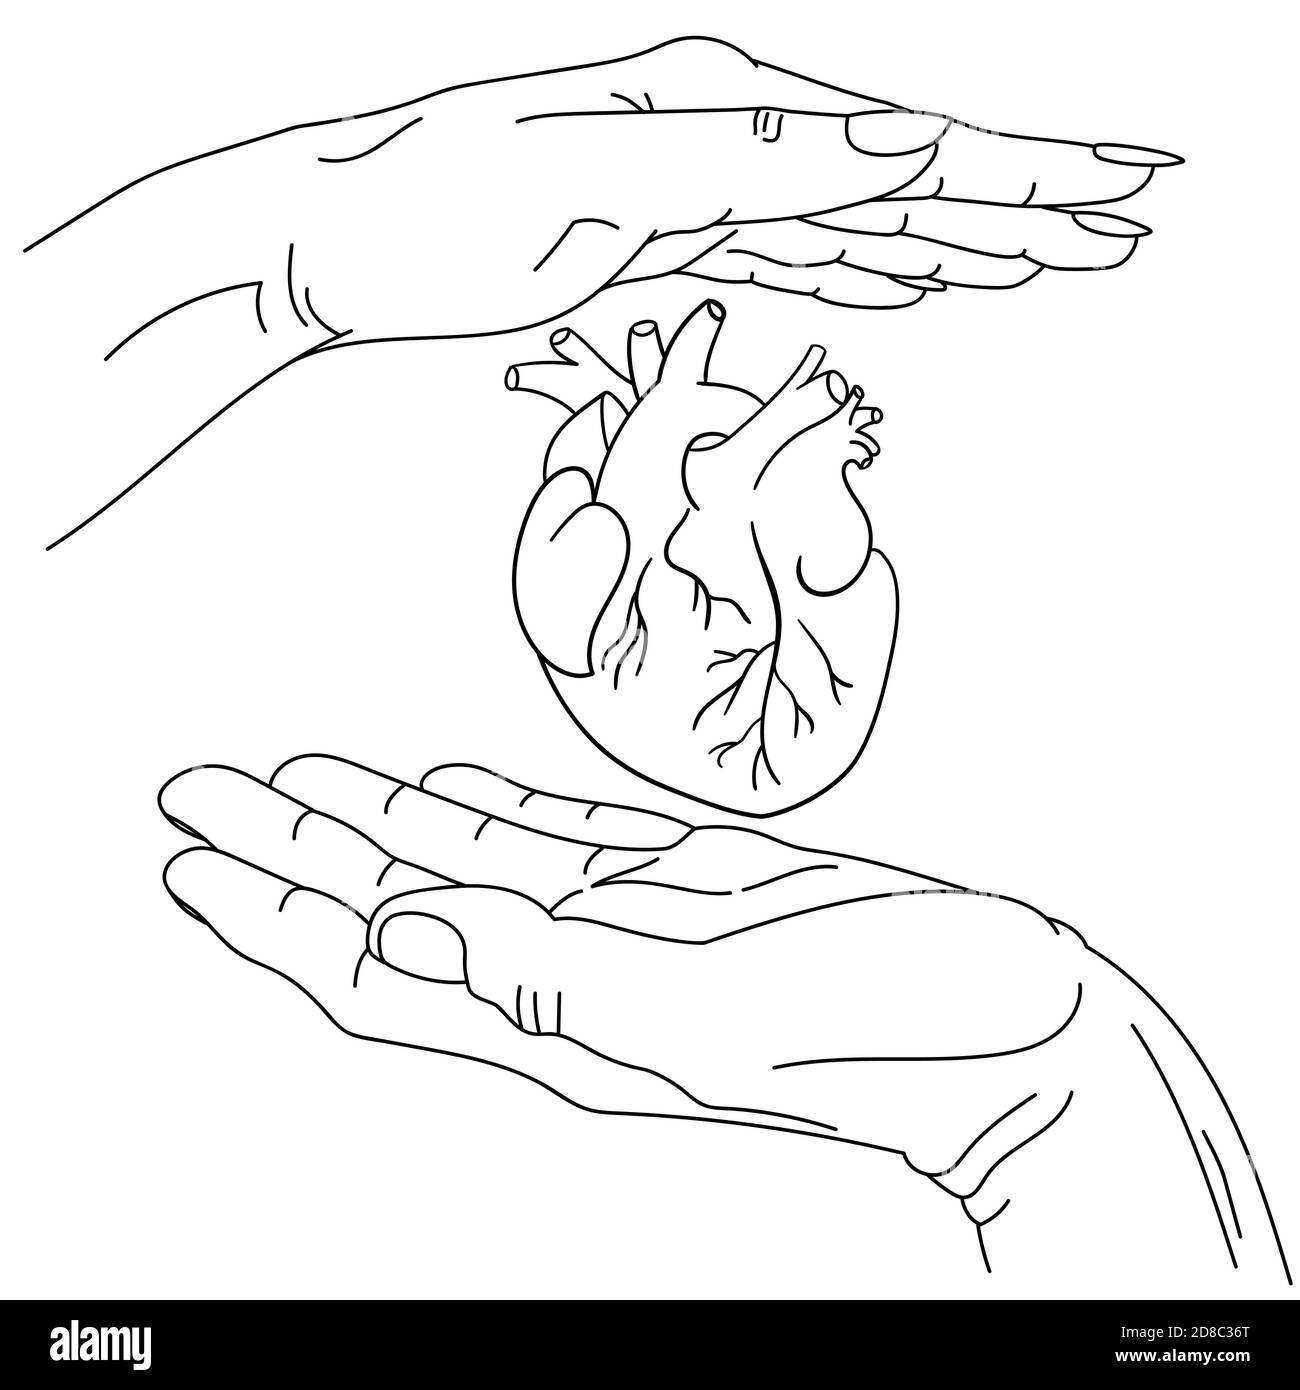 Männliche und weibliche Hand und anatomisches Herz zwischen ihnen. vektor-lineart-Grafik, handgezeichnet. Symbolisches Bild von Pflege und Schutz, Liebe. Konzeptkunst für Medizin, Kardiologie, Herzgesundheit und Unterstützung. Stock Vektor